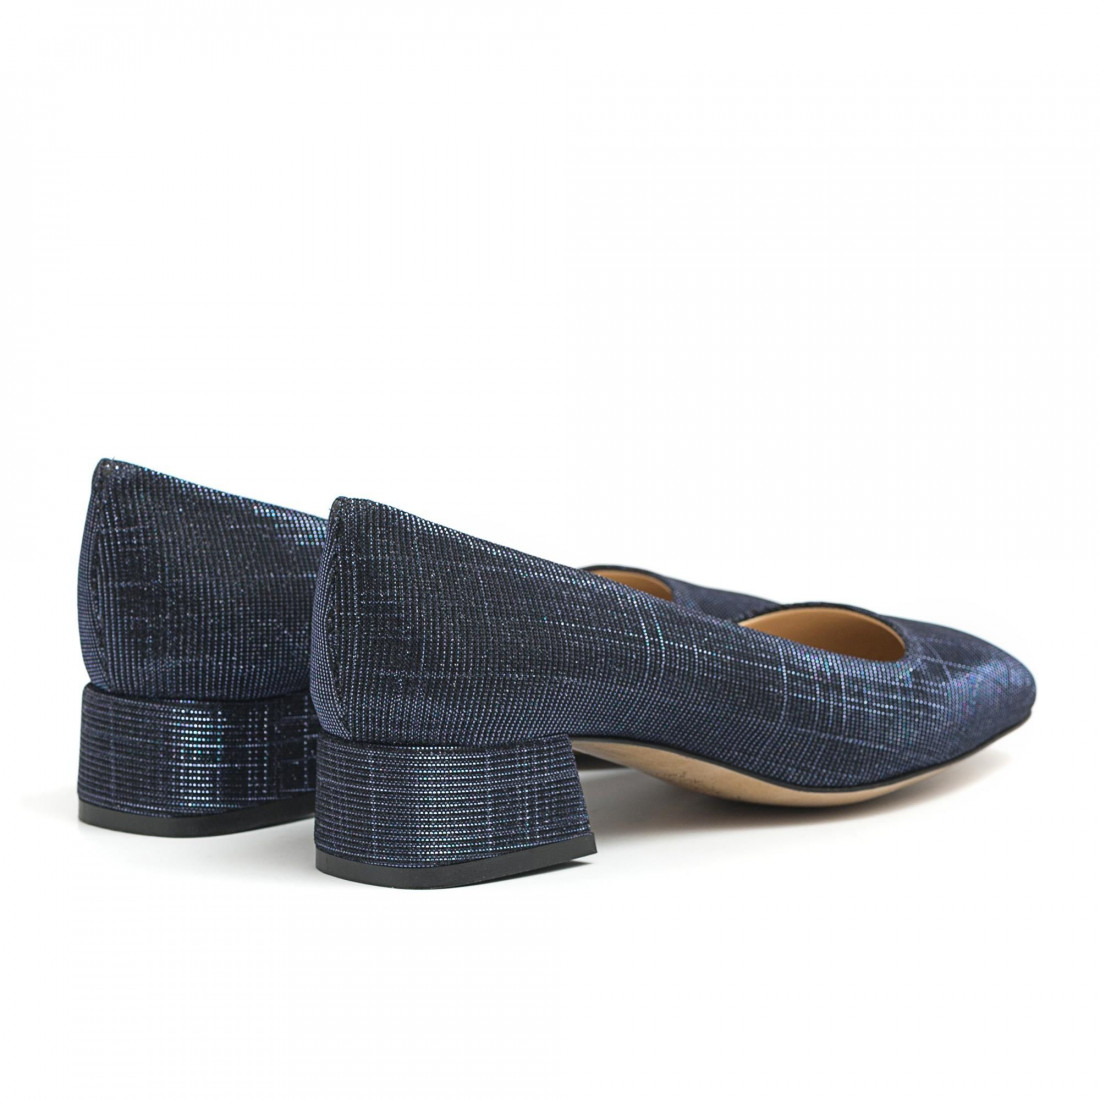 Schoen in blauwe stof met lage hak